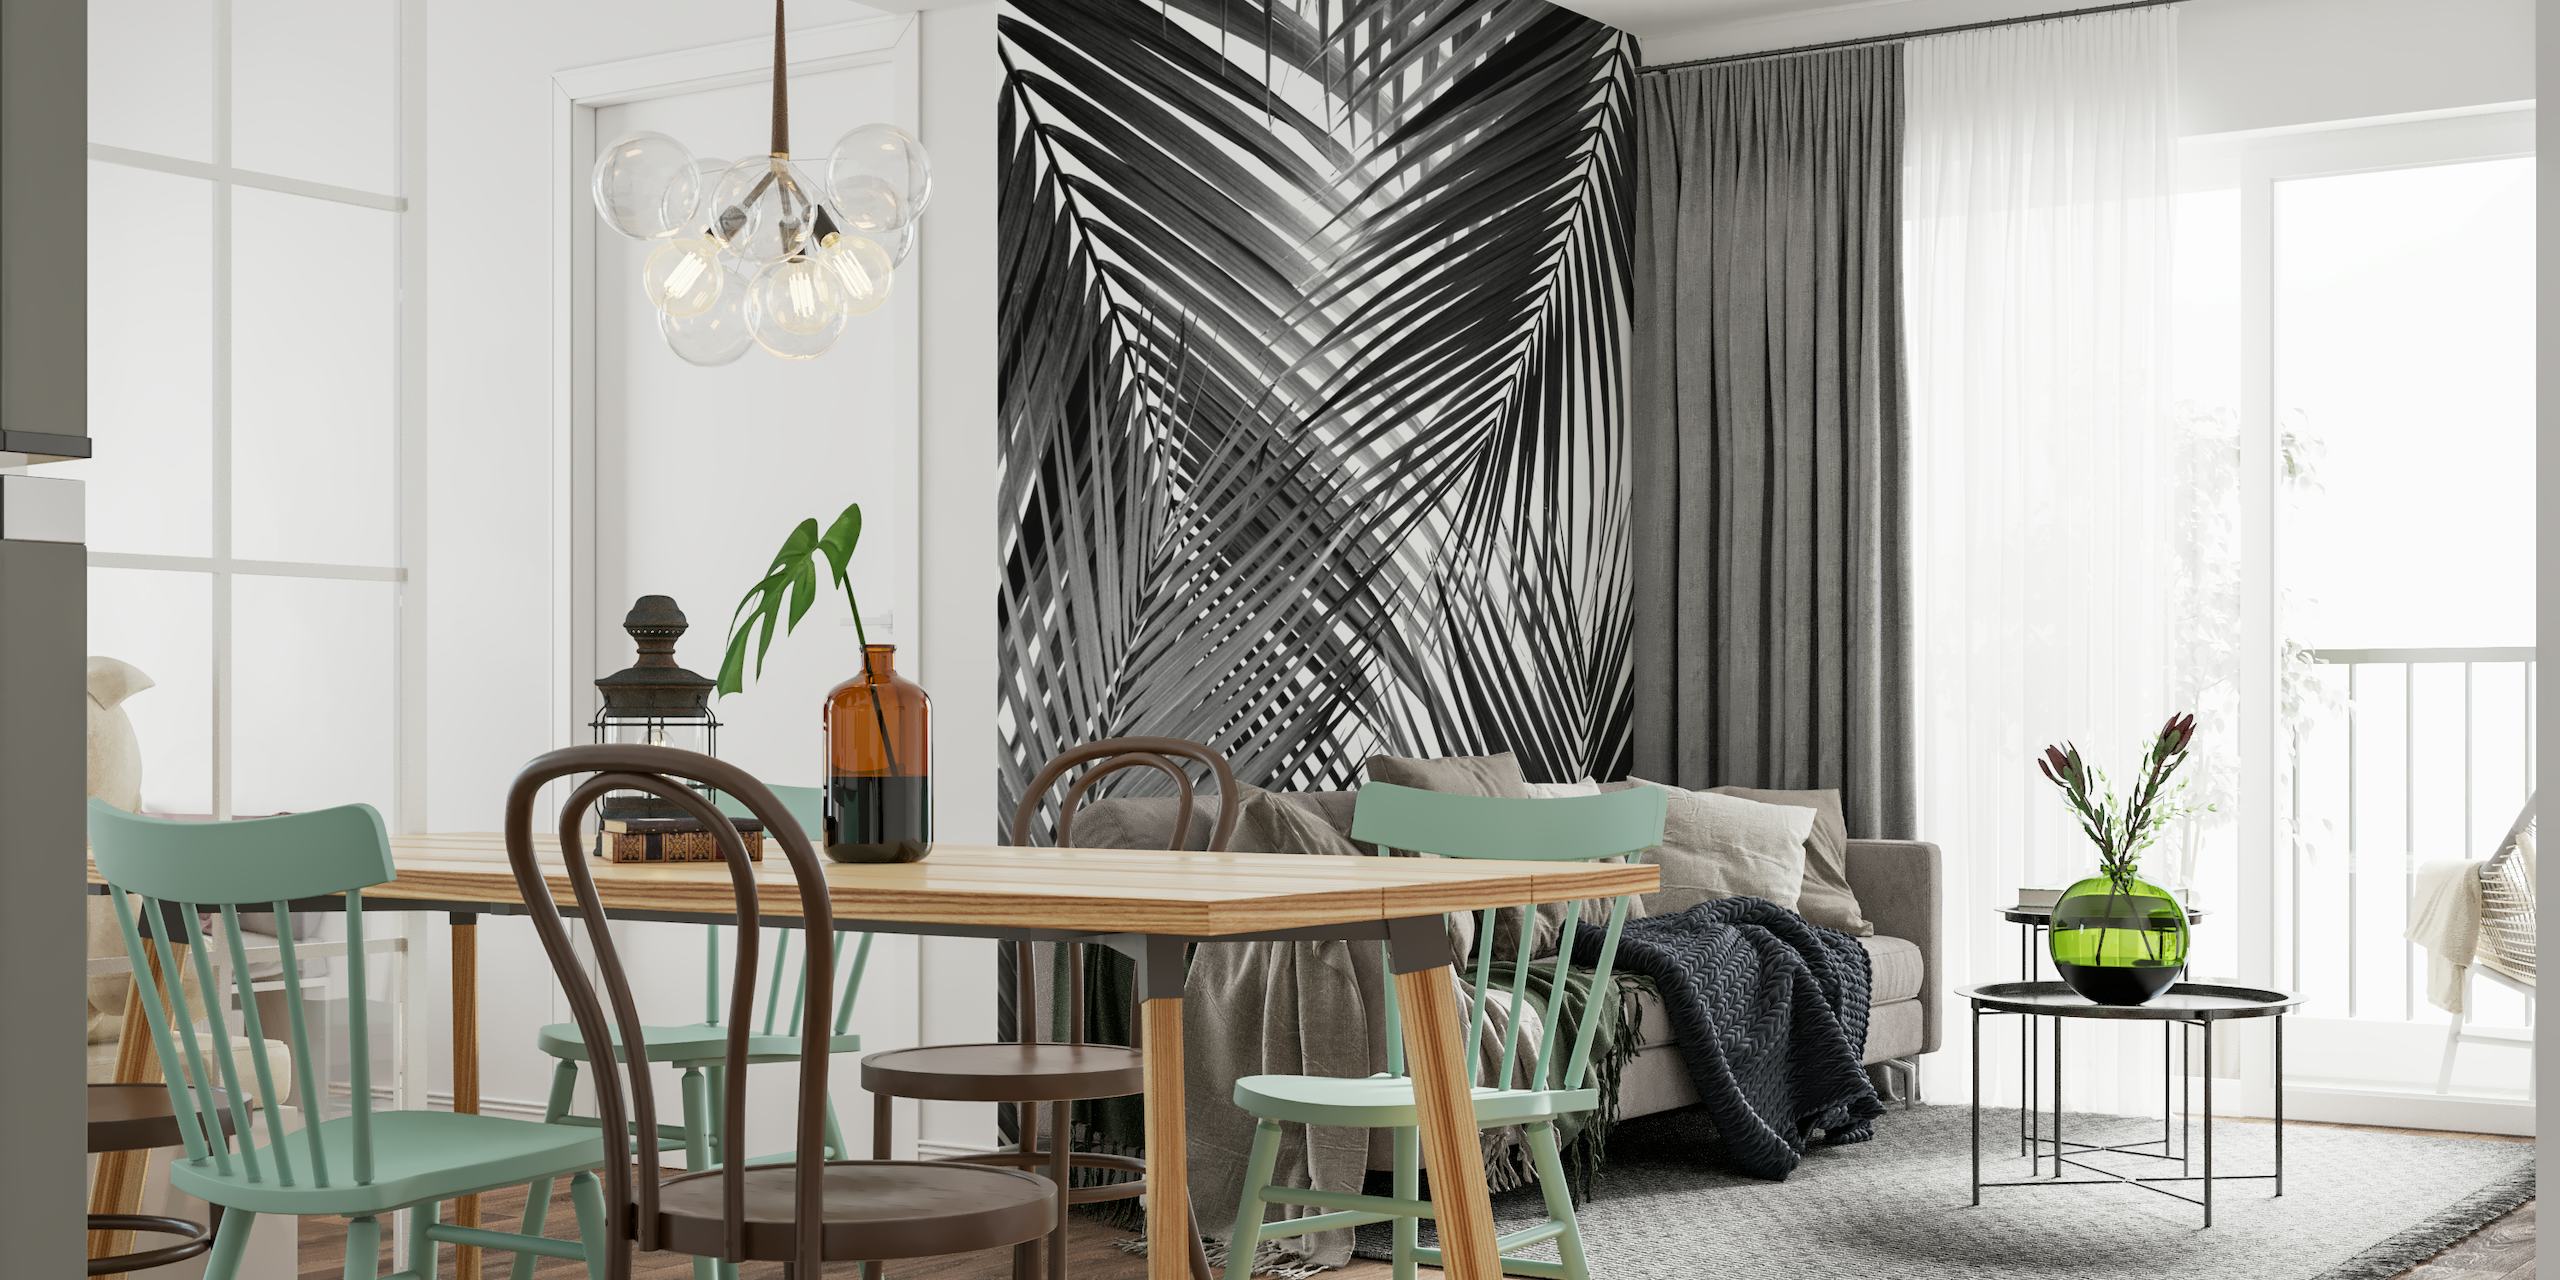 Peinture murale en noir et blanc de feuilles de palmier abstraites